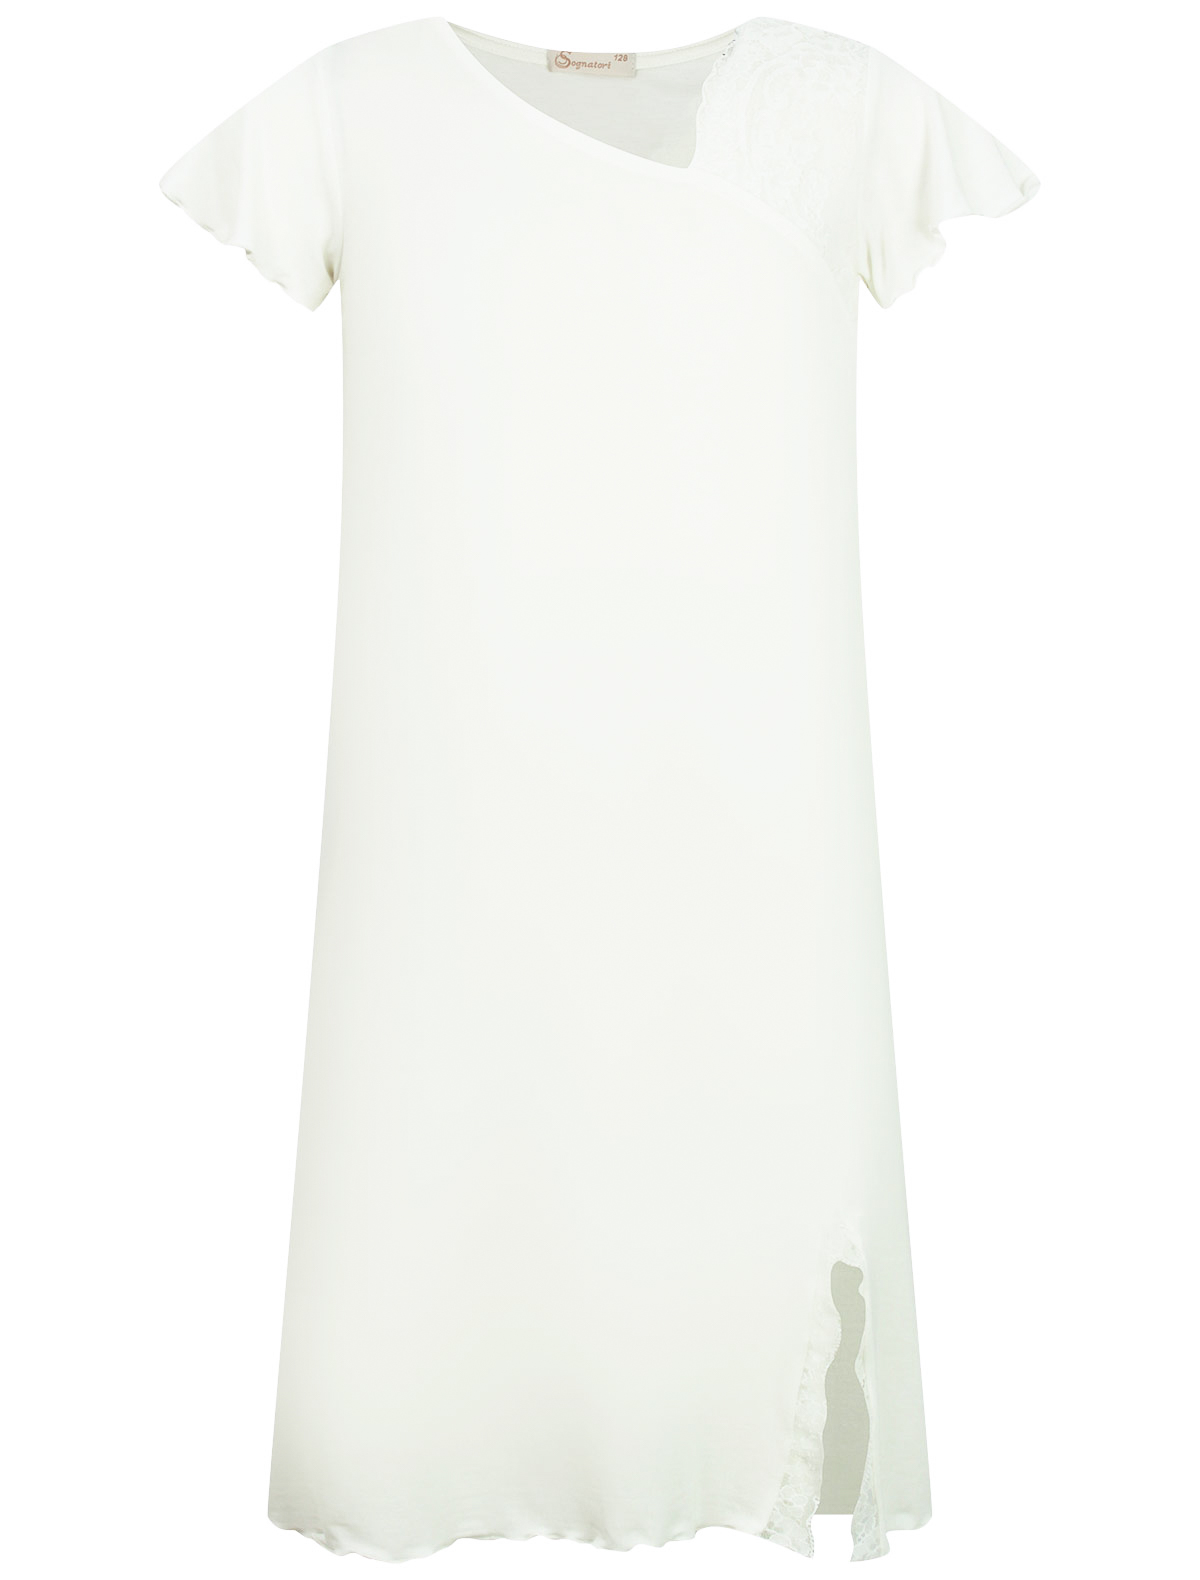 Ночная рубашка Sognatori 2300094, цвет разноцветный, размер 8